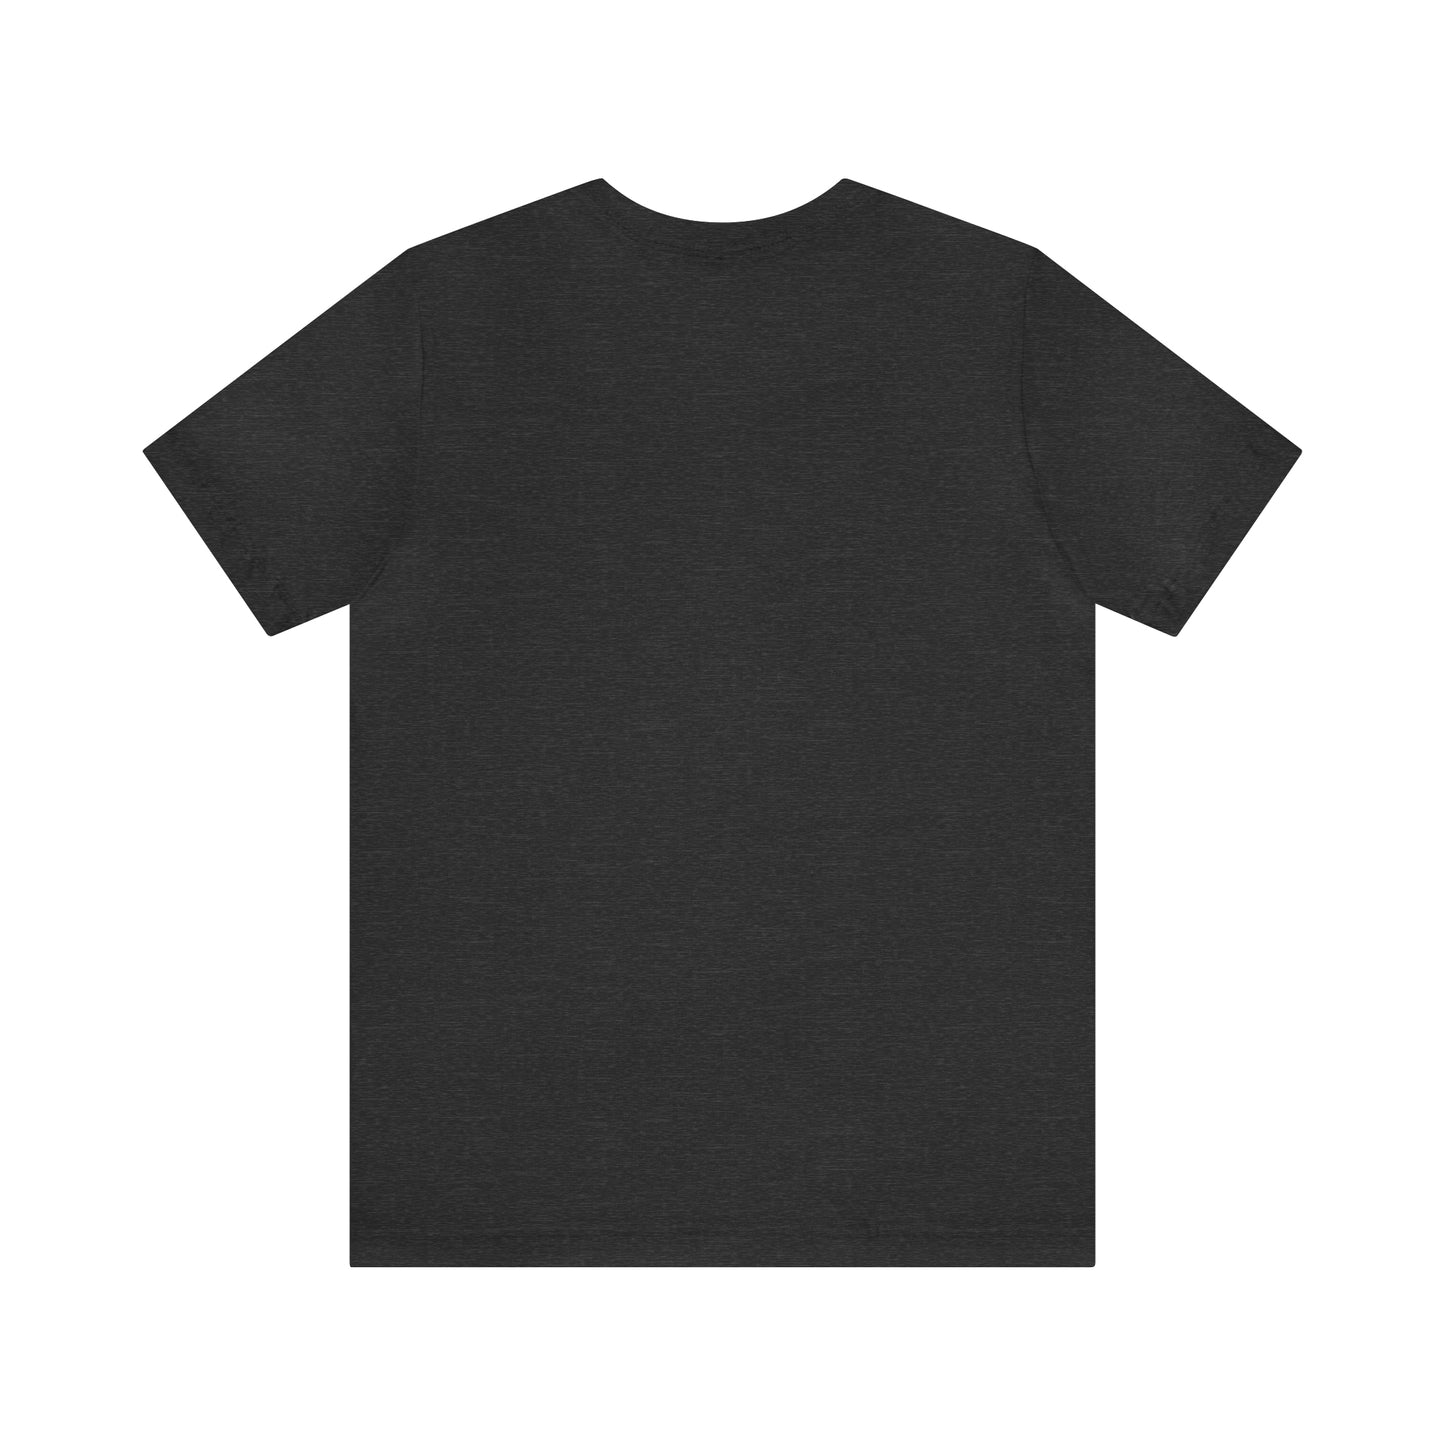 Sloth Yoga T-Shirt, Yoga Gift, Funny Yoga, Sloth T-Shirt, Cute Sloth Shirt